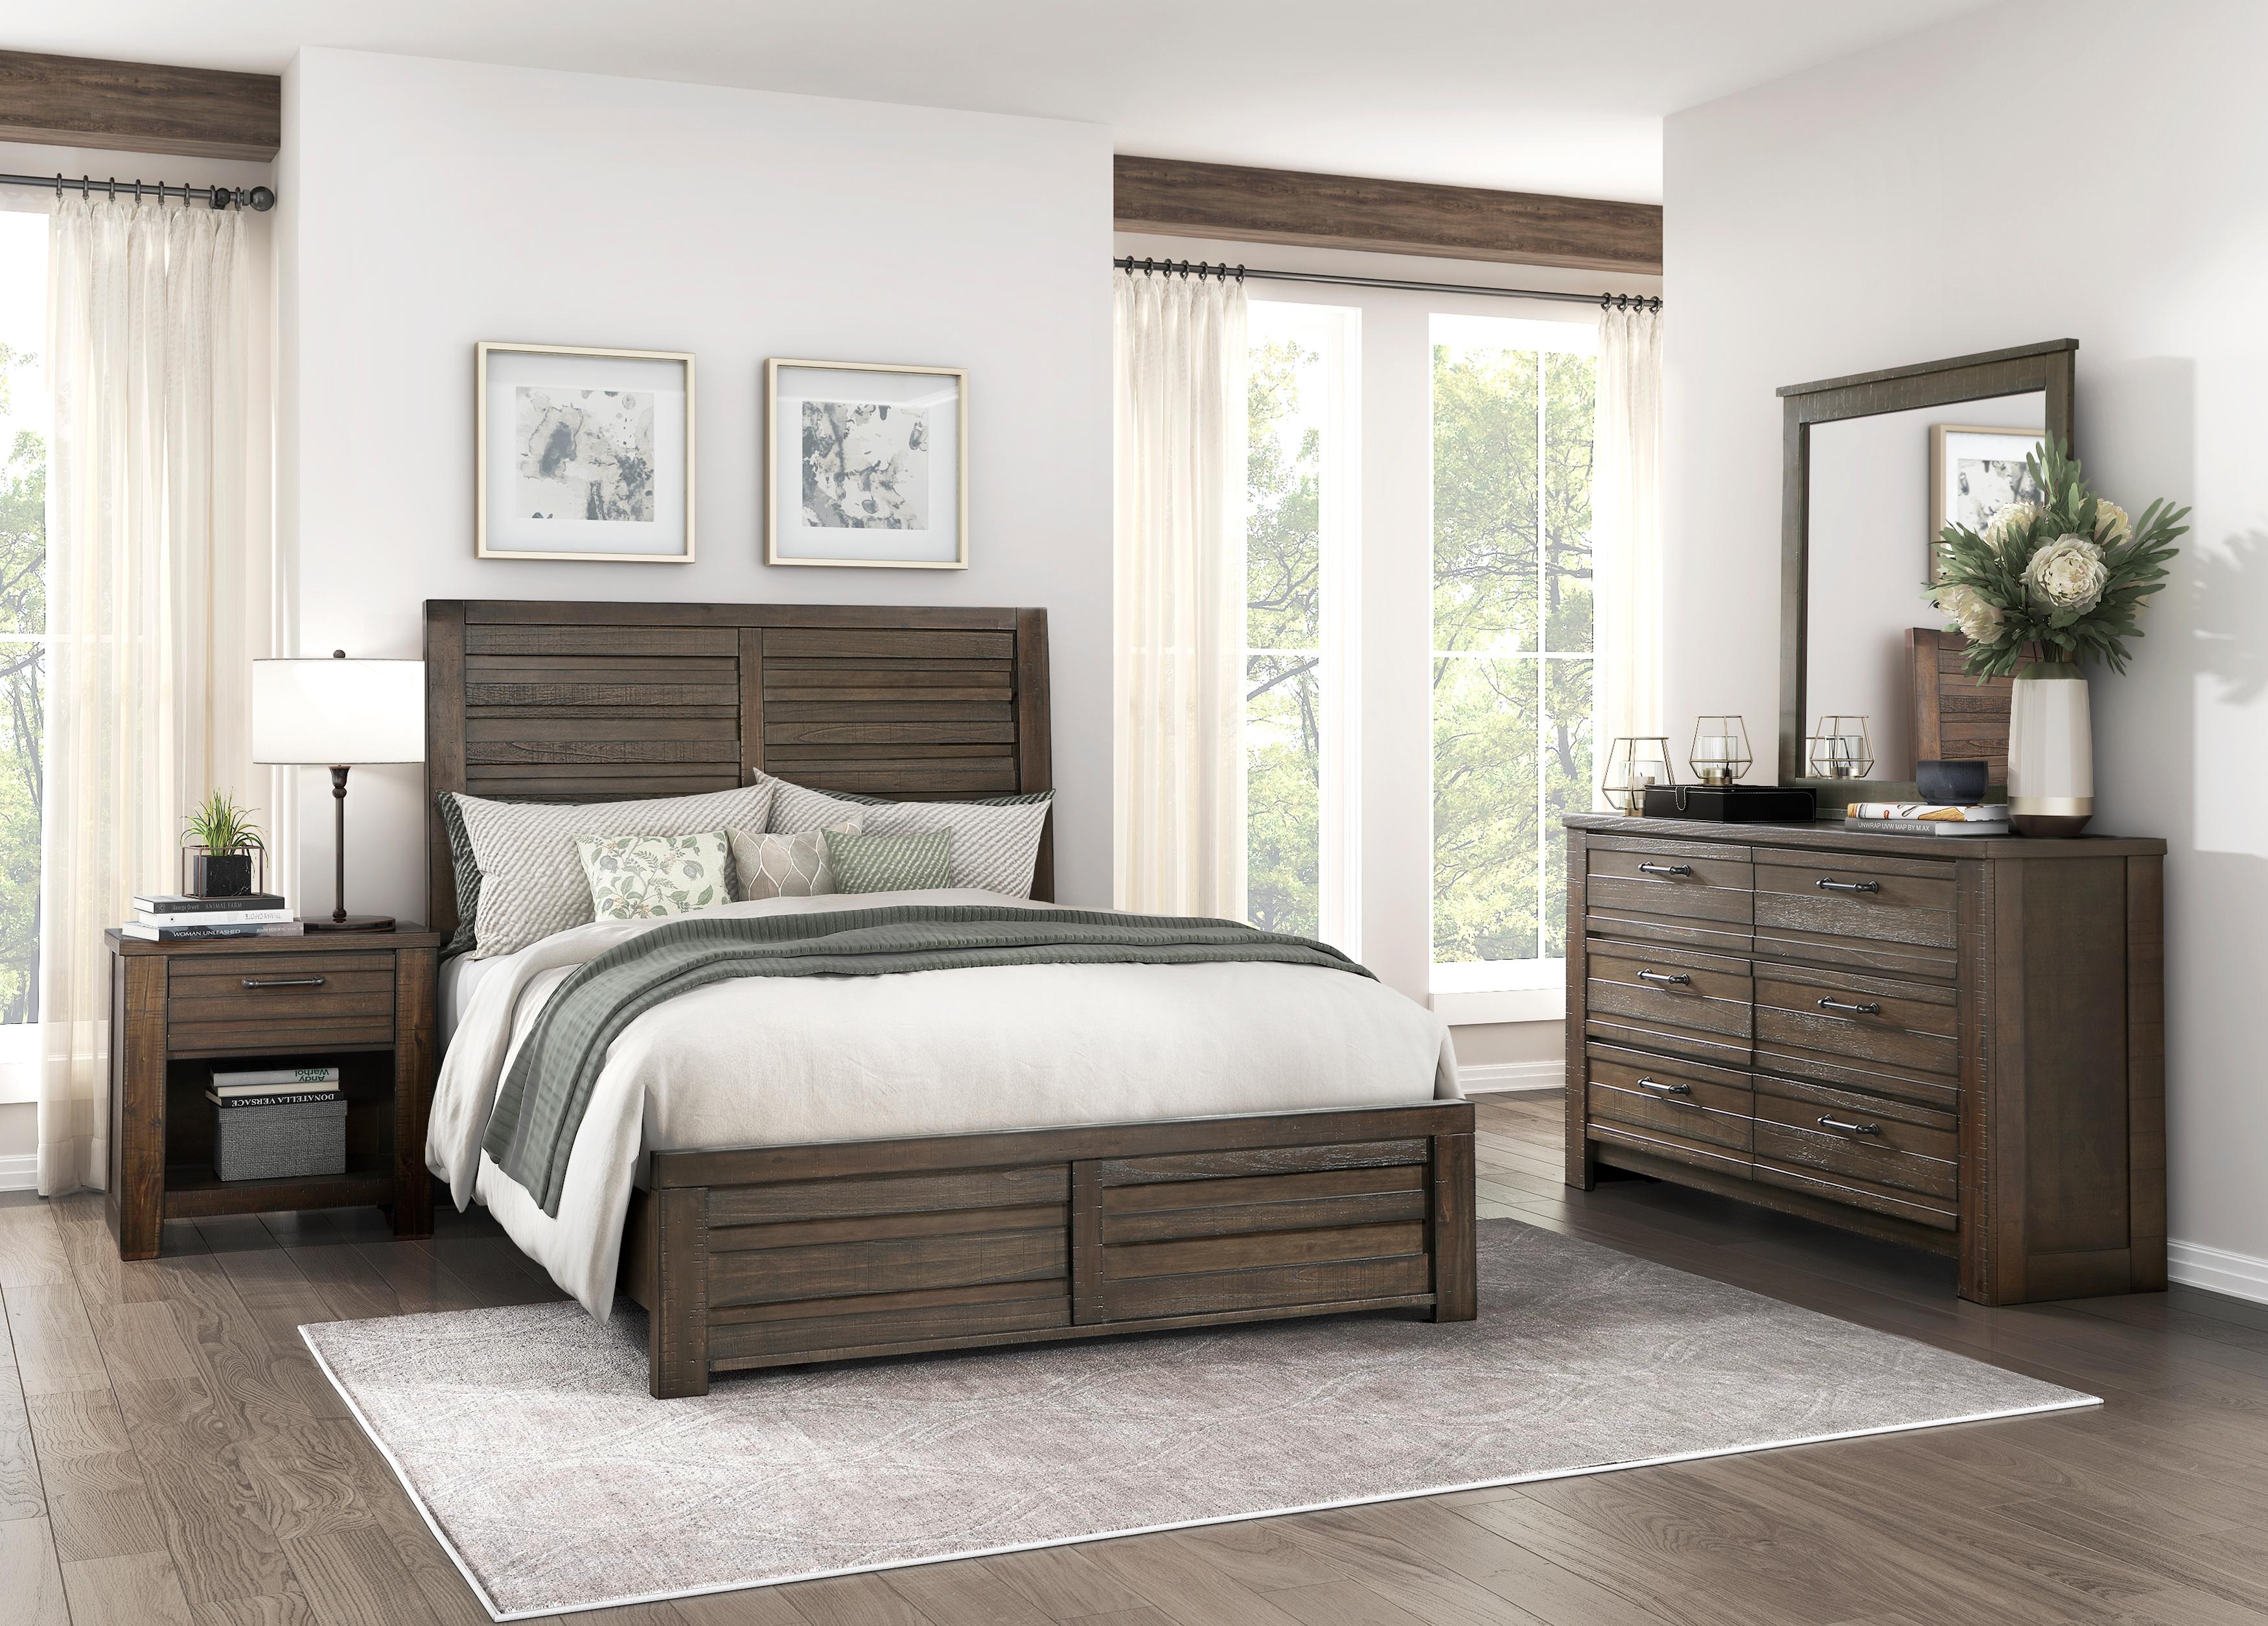 

    
Rustic Dark Brown Wood California King Panel Bedroom Set 3PCS Homelegance Longview 1498DBK-1CK-3PCS
